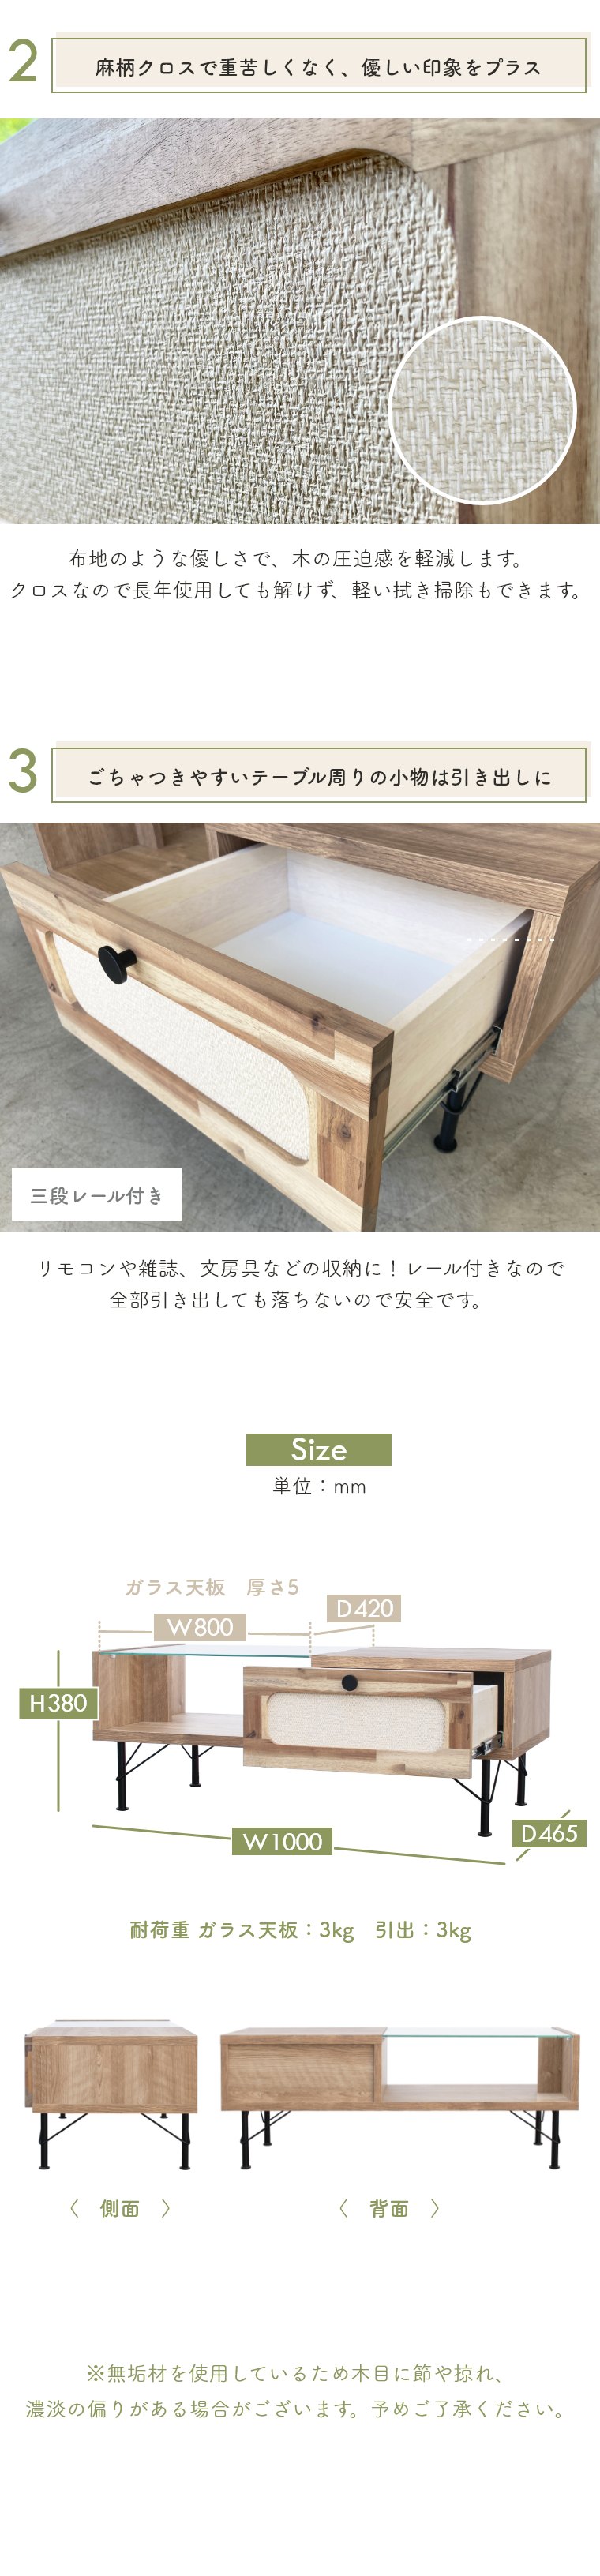 リビングテーブル センターテーブル TIGO ティゴ 幅100cm ガルト 日本製 国産 木製 無垢 無地 シンプル